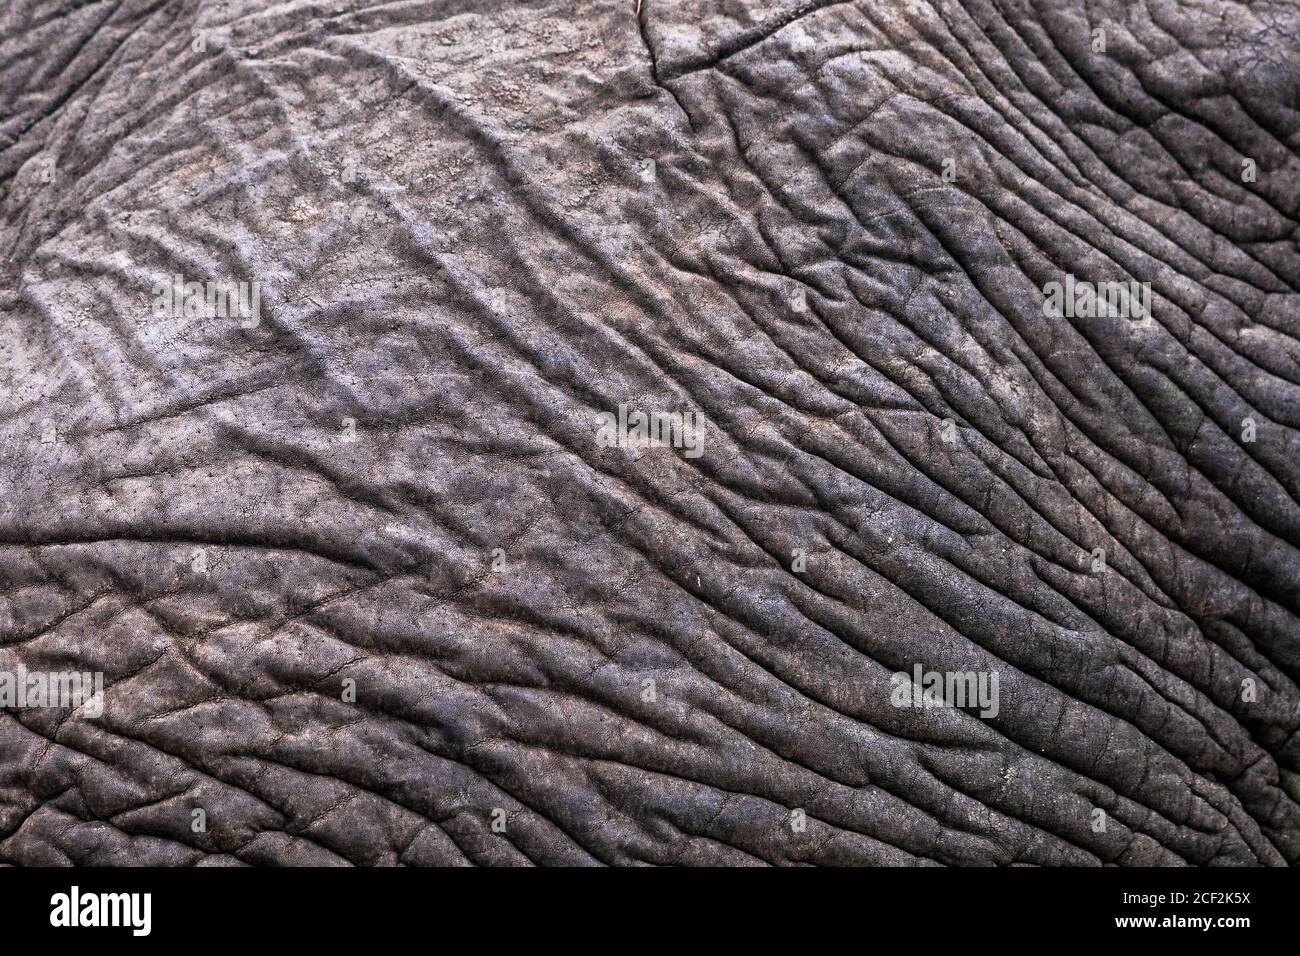 En cuir d'éléphant motif peau ridée close-up résumé thème safari et métaphore pour ne pas s'inquiéter Banque D'Images